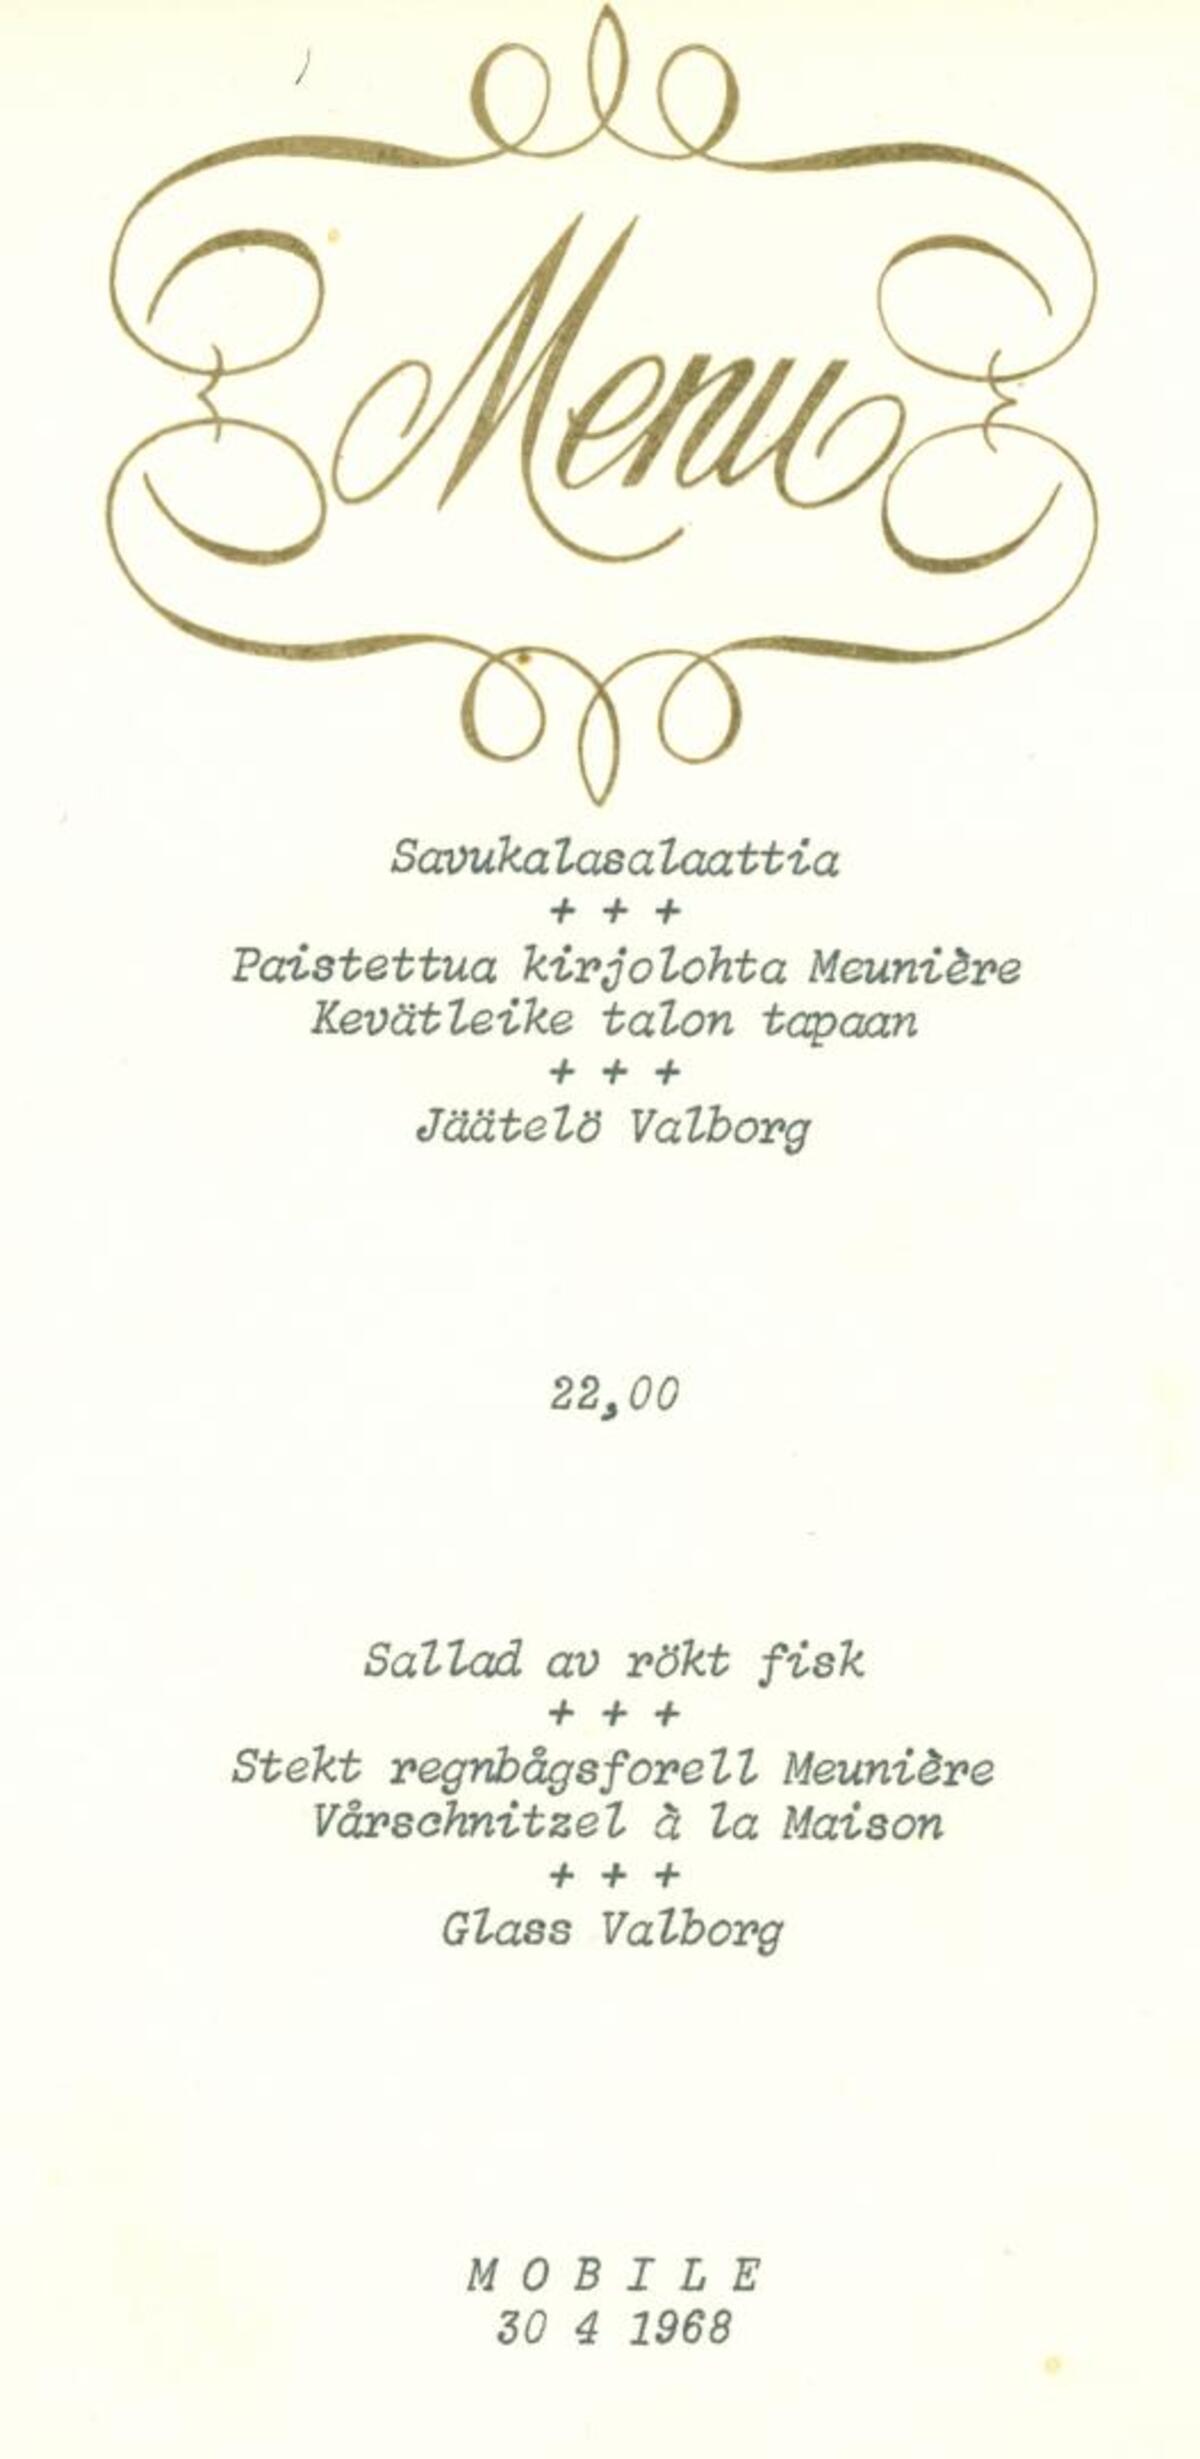 Restaurang Mobiles meny 30.4.1968